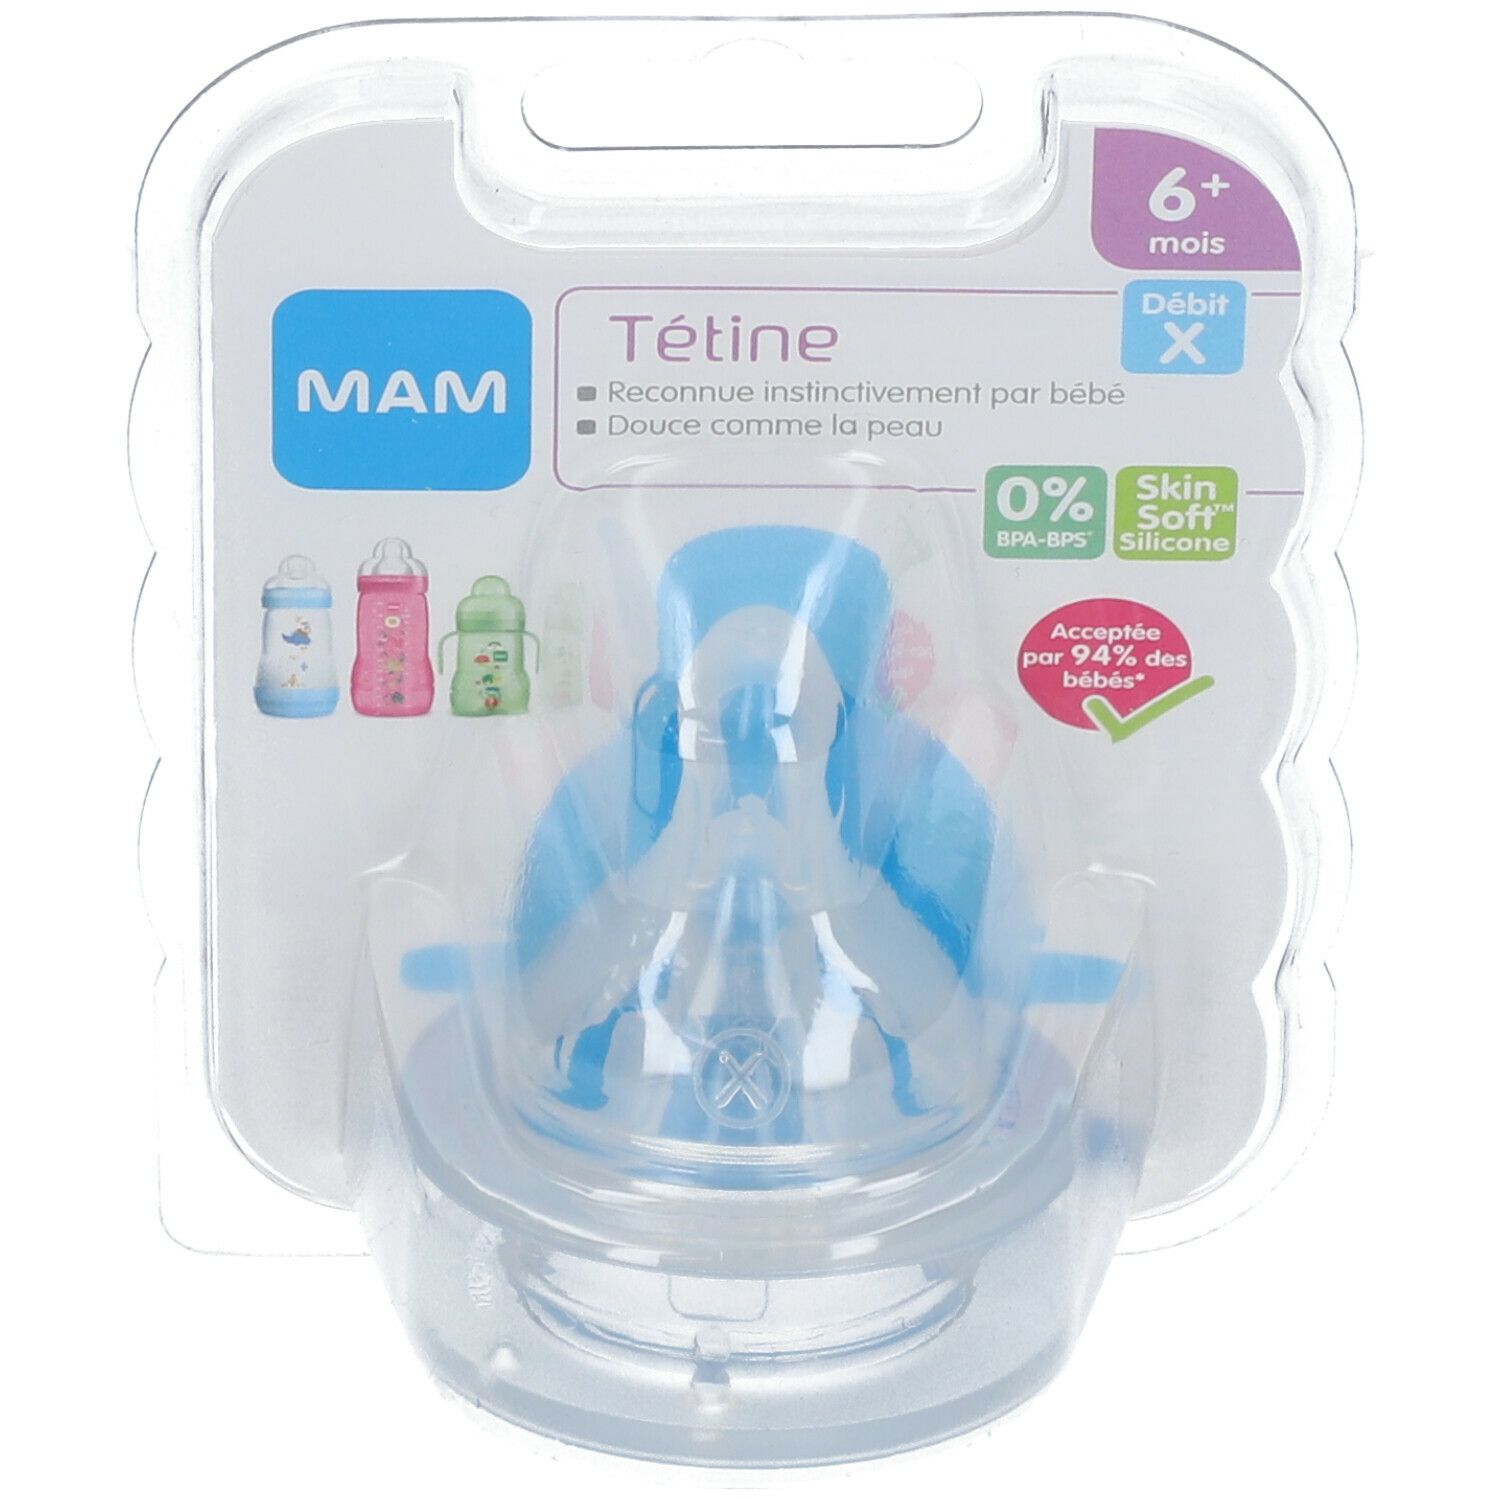 MAM Tétine 0 mois+ - Tétine bébé en silicone débit 1 - Lot de 2